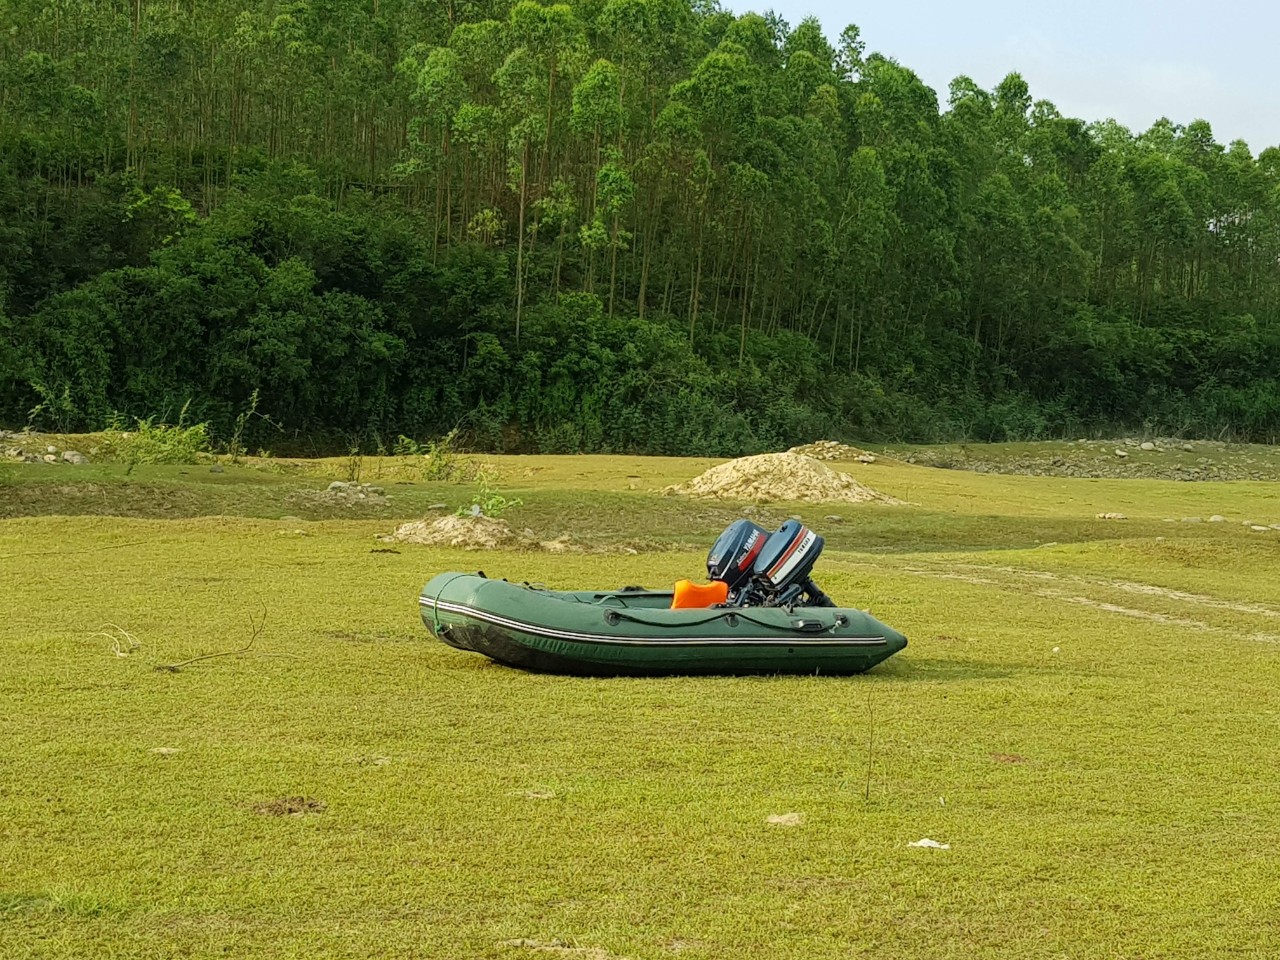 Vẻ yên bình: thuyền hơi trên bãi cỏ